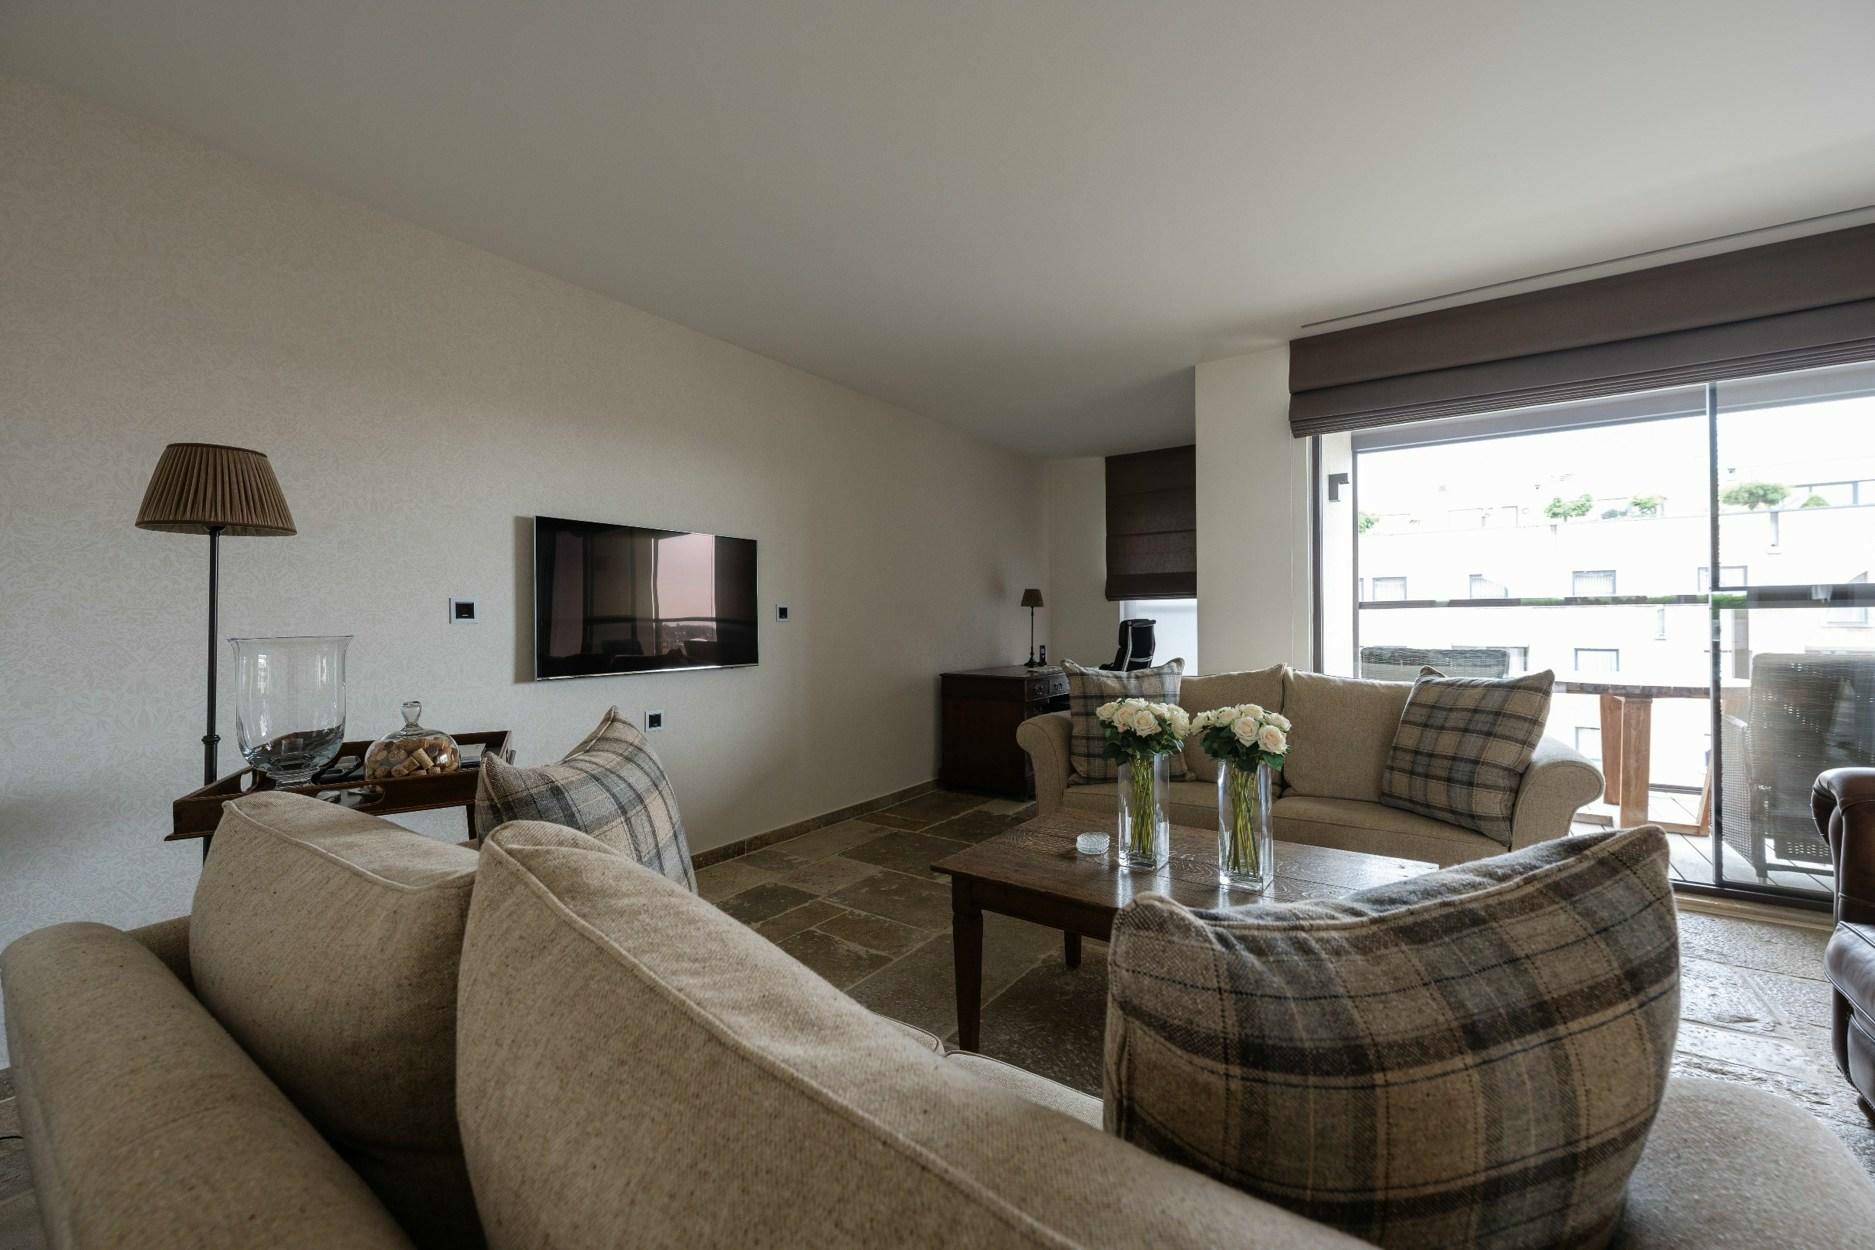 Exclusief luxe appartement met een bewoonbare oppervlakte van 179m2 en terras van 56m2.